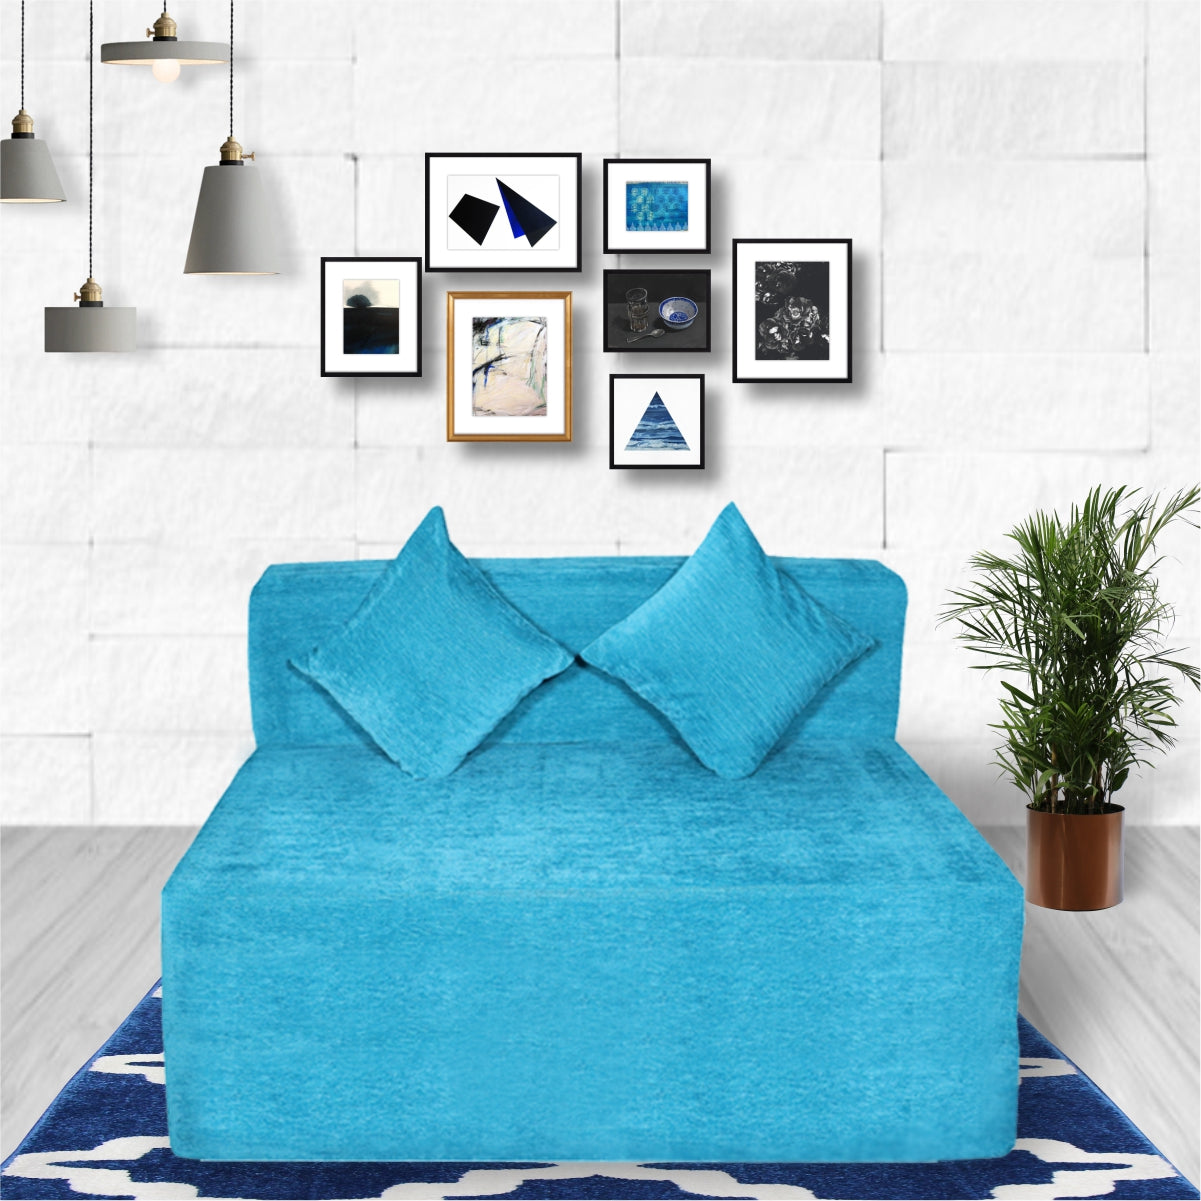 Cover of Sky Blue Molfino Fabric 6'X4' Rejoice Sofa cum Bed